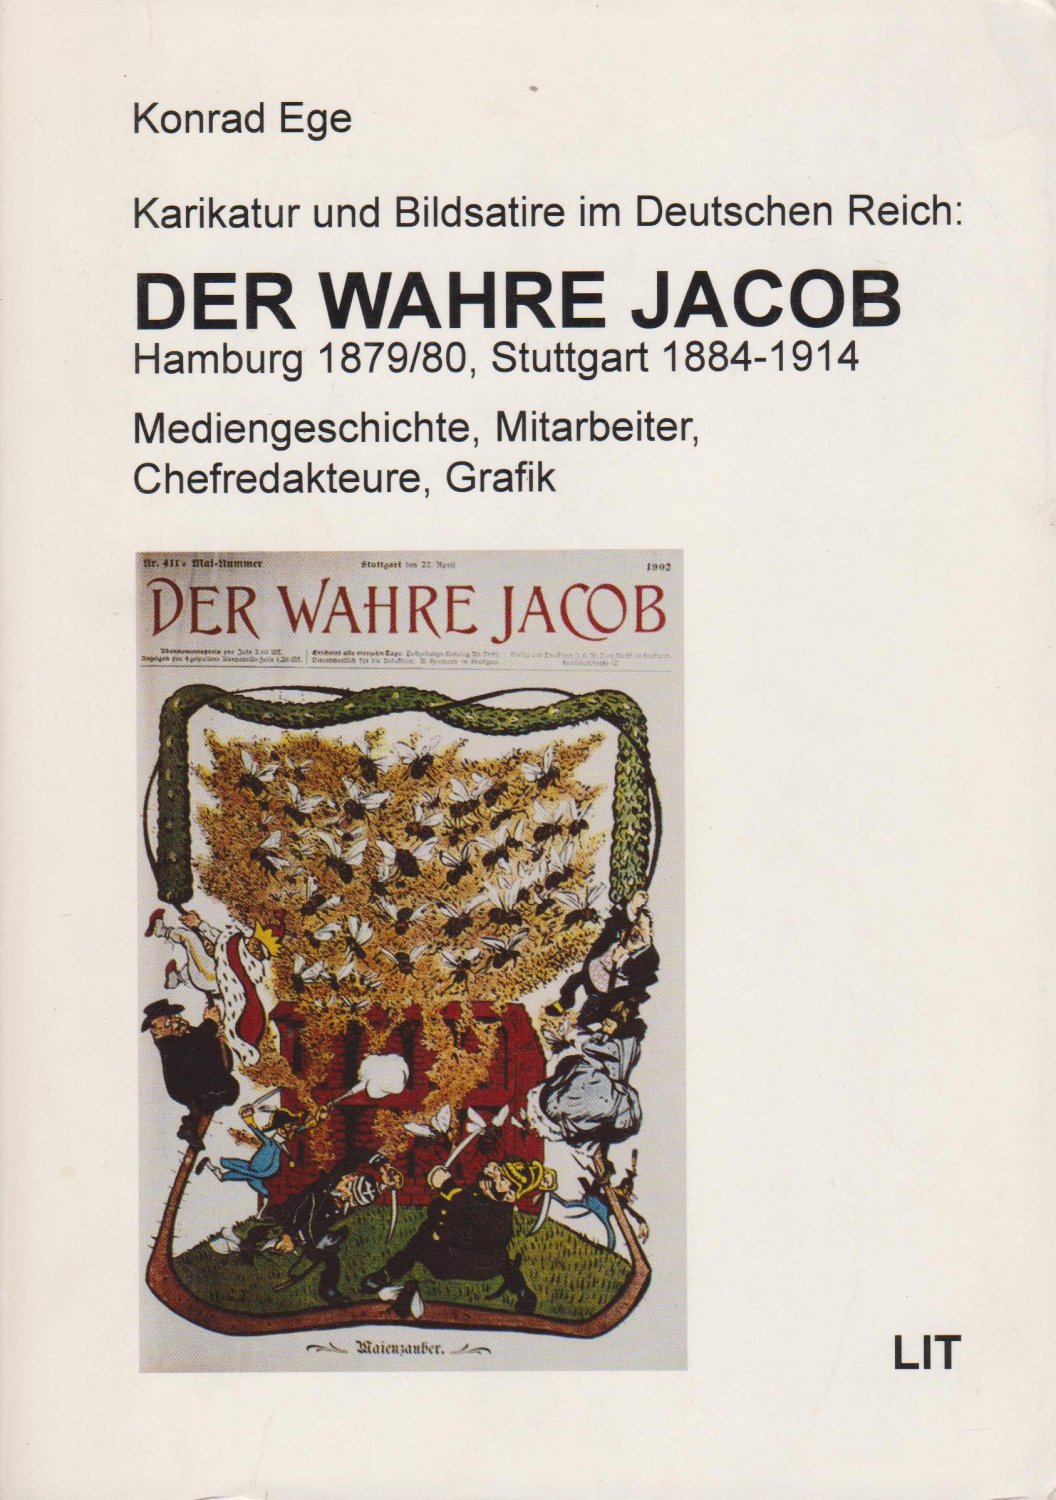 EGE, Konrad:  Karikatur und Bildsatire im Deutschen Reich: Der wahre Jacob. Hamburg 1879/80, Stuttgart 1884-1914. Mediengeschichte, Mitarbeiter, Chefredakteure, Grafik. 